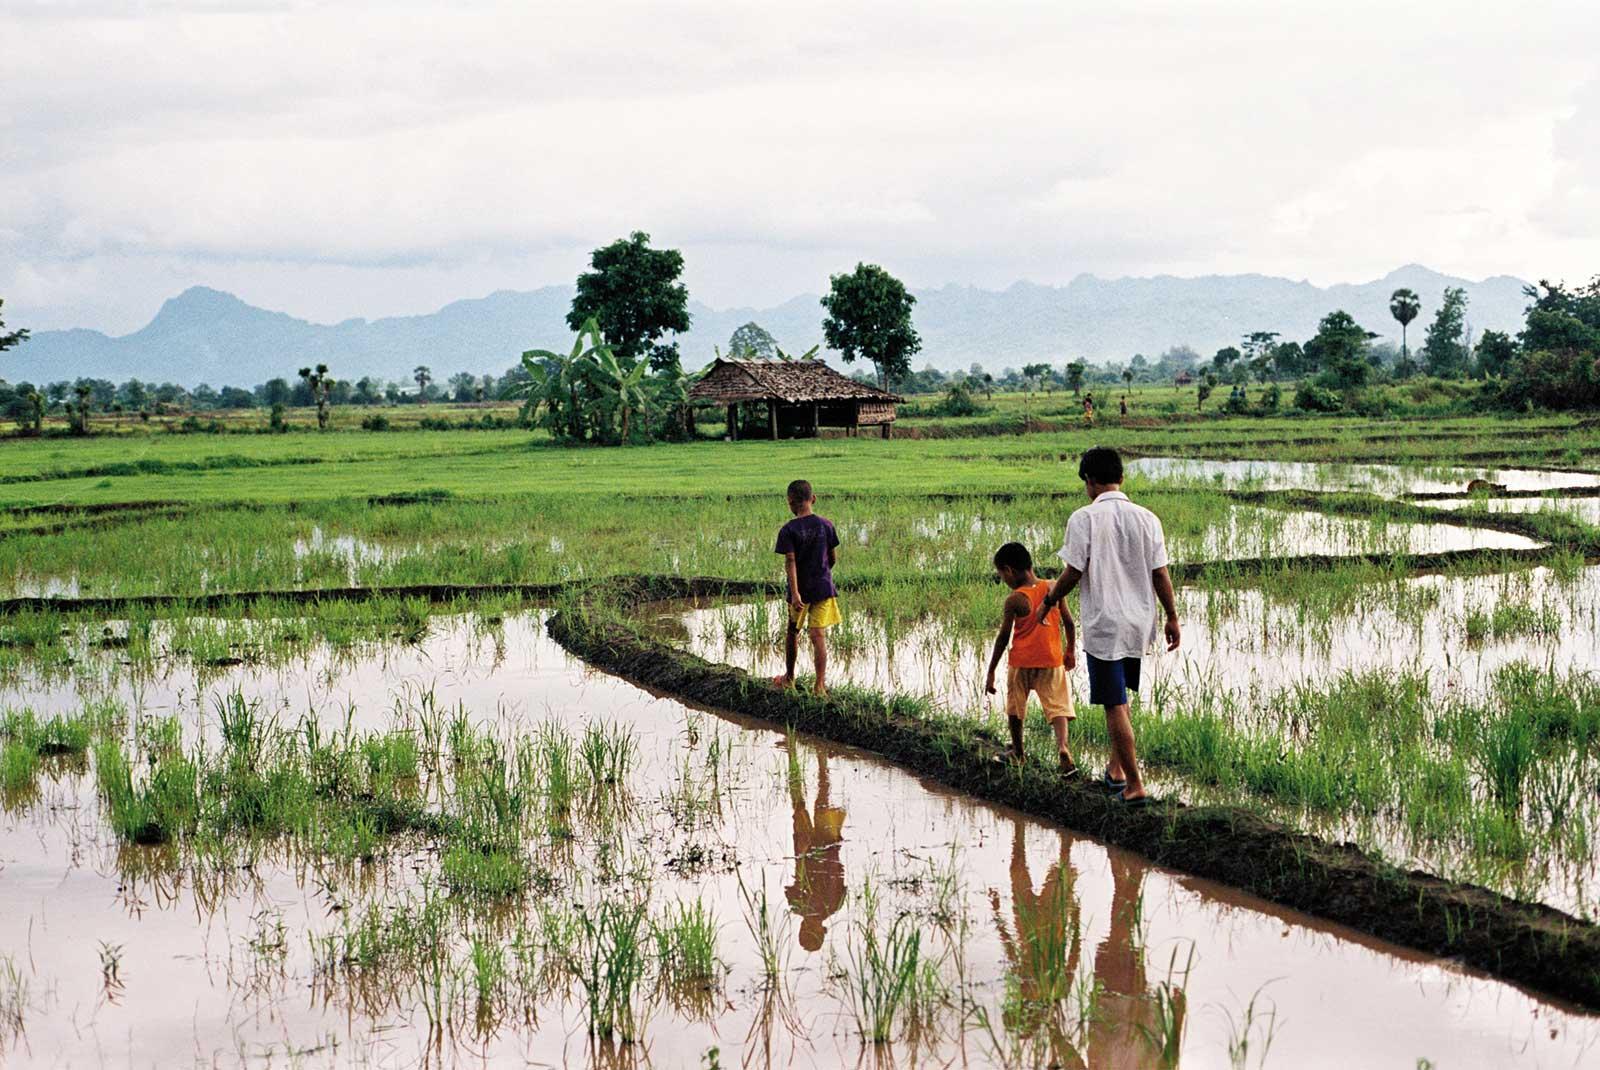 Kids walking across rice fields